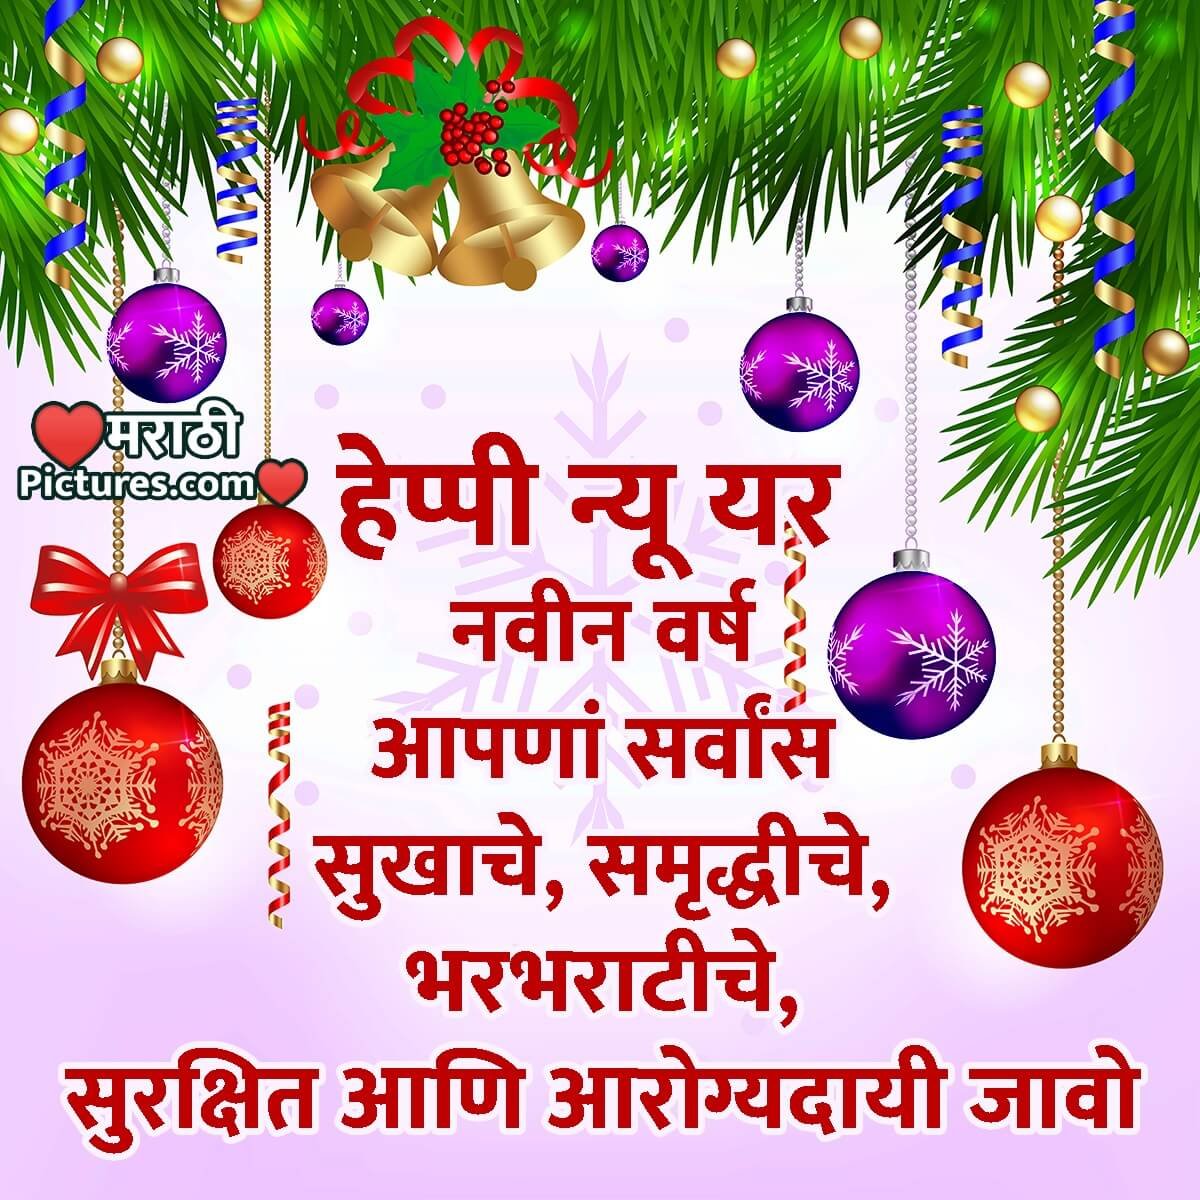 Happy New Year Wish In Marathi